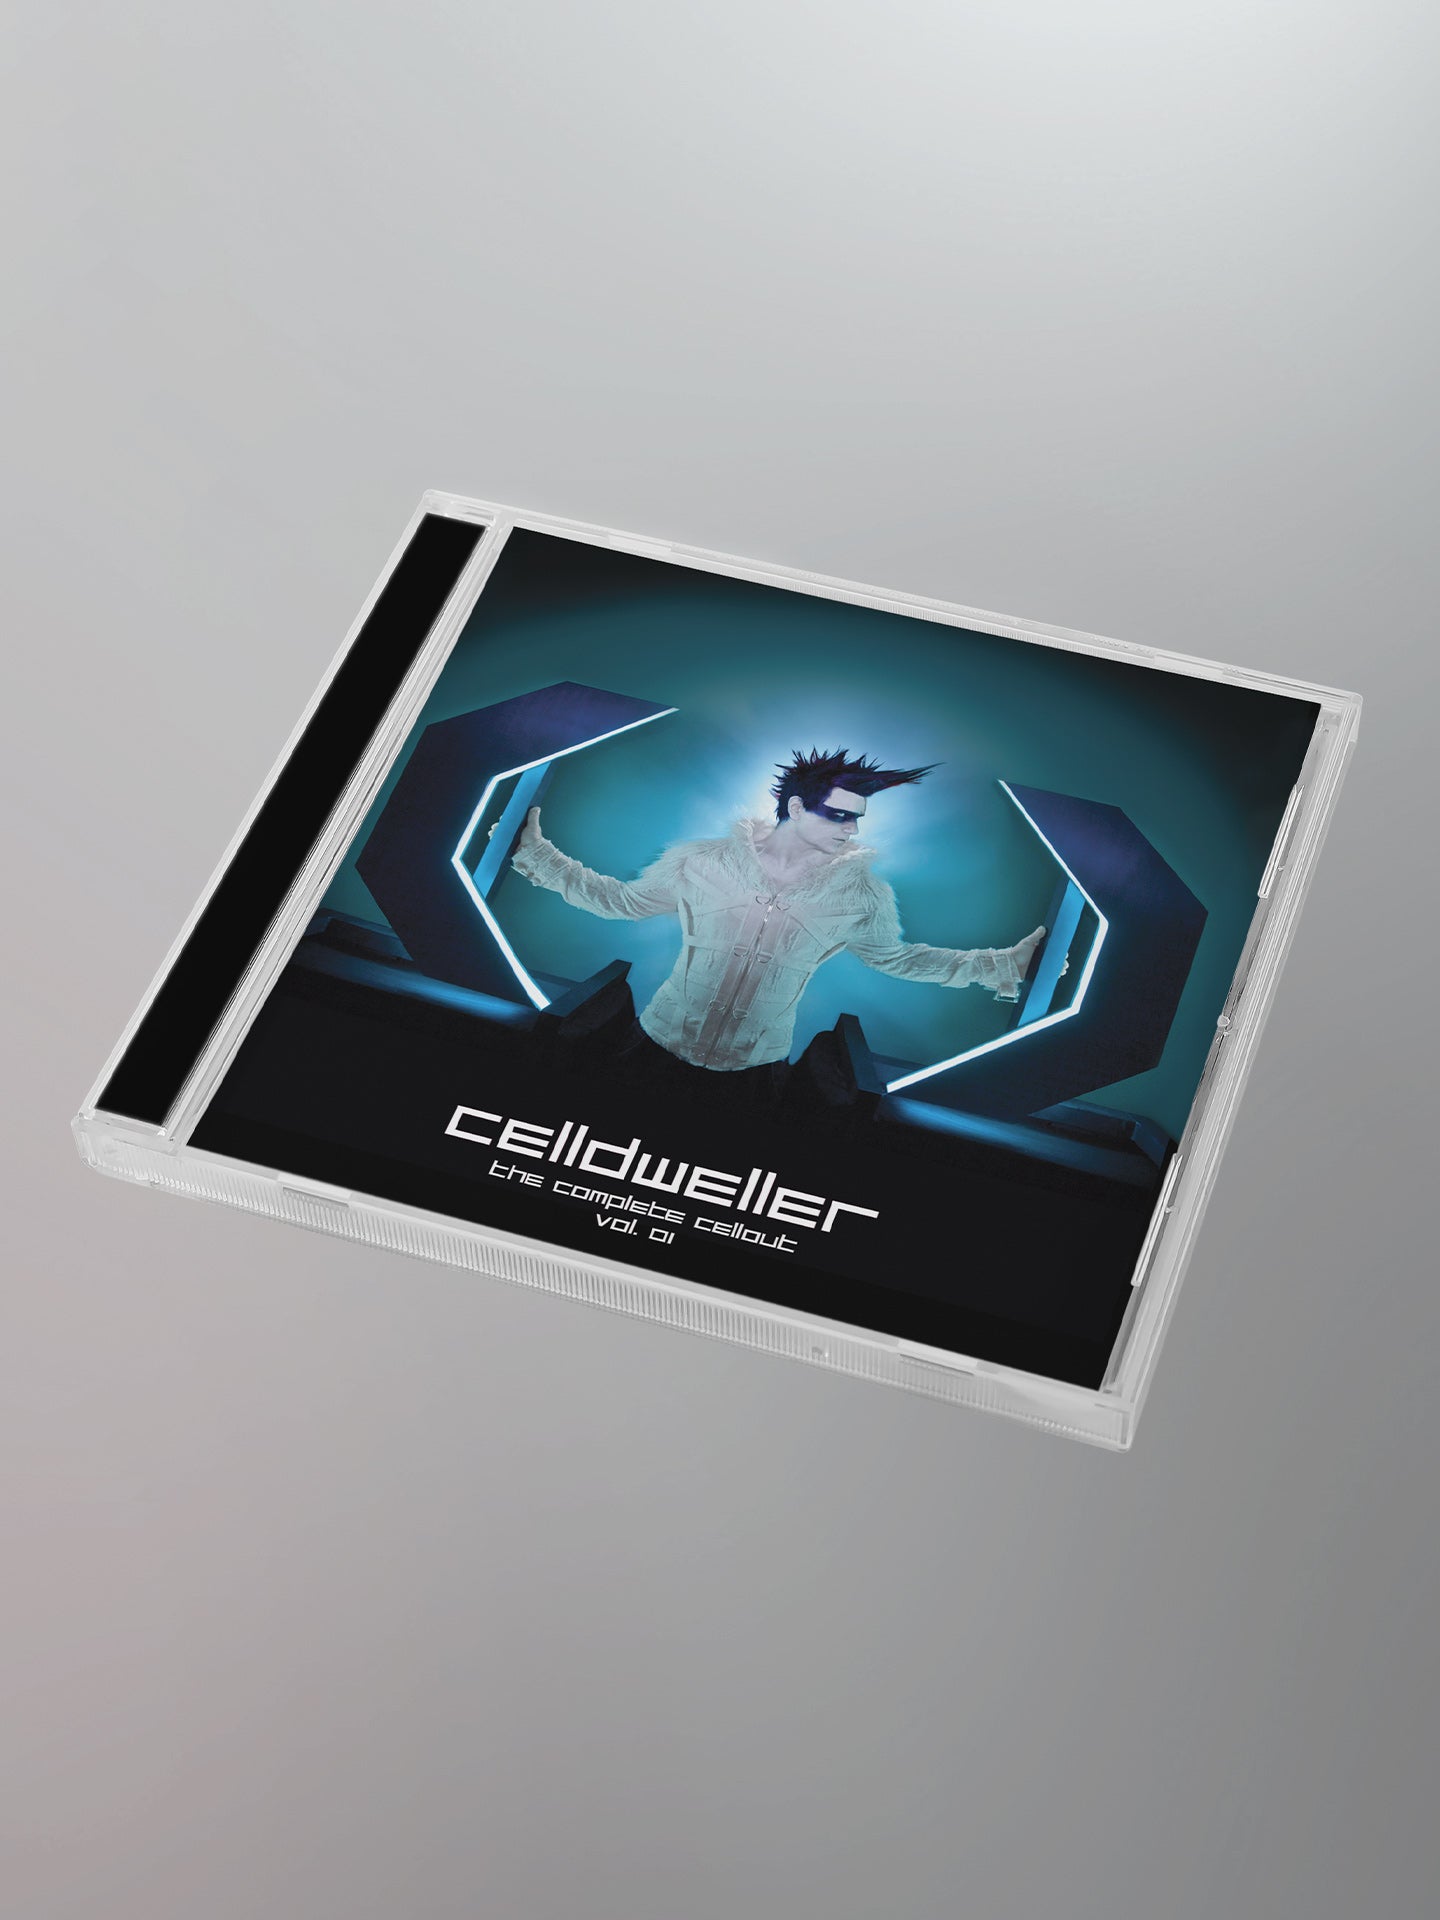 Celldweller - The Complete Cellout Vol. 01